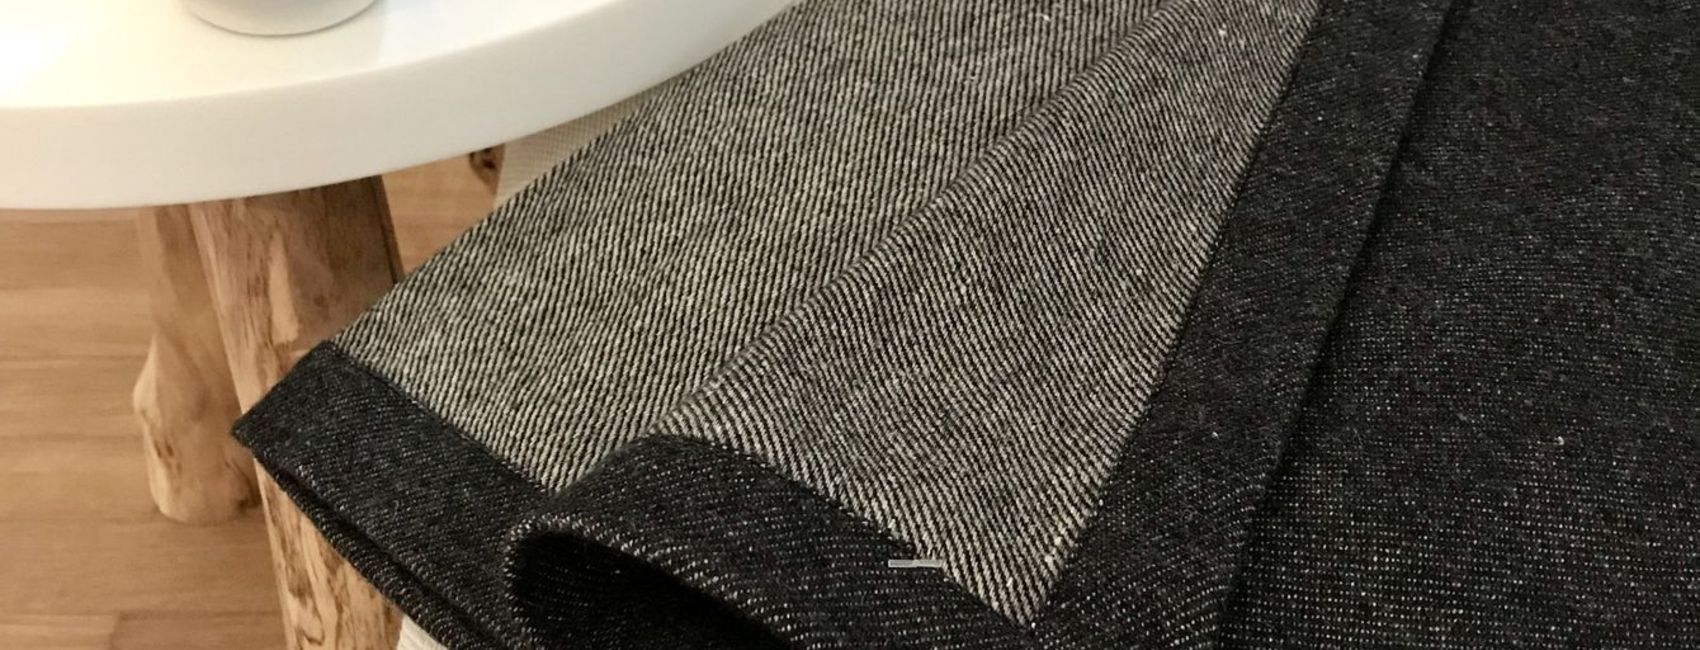 Linen & wool blanket - Denim pattern